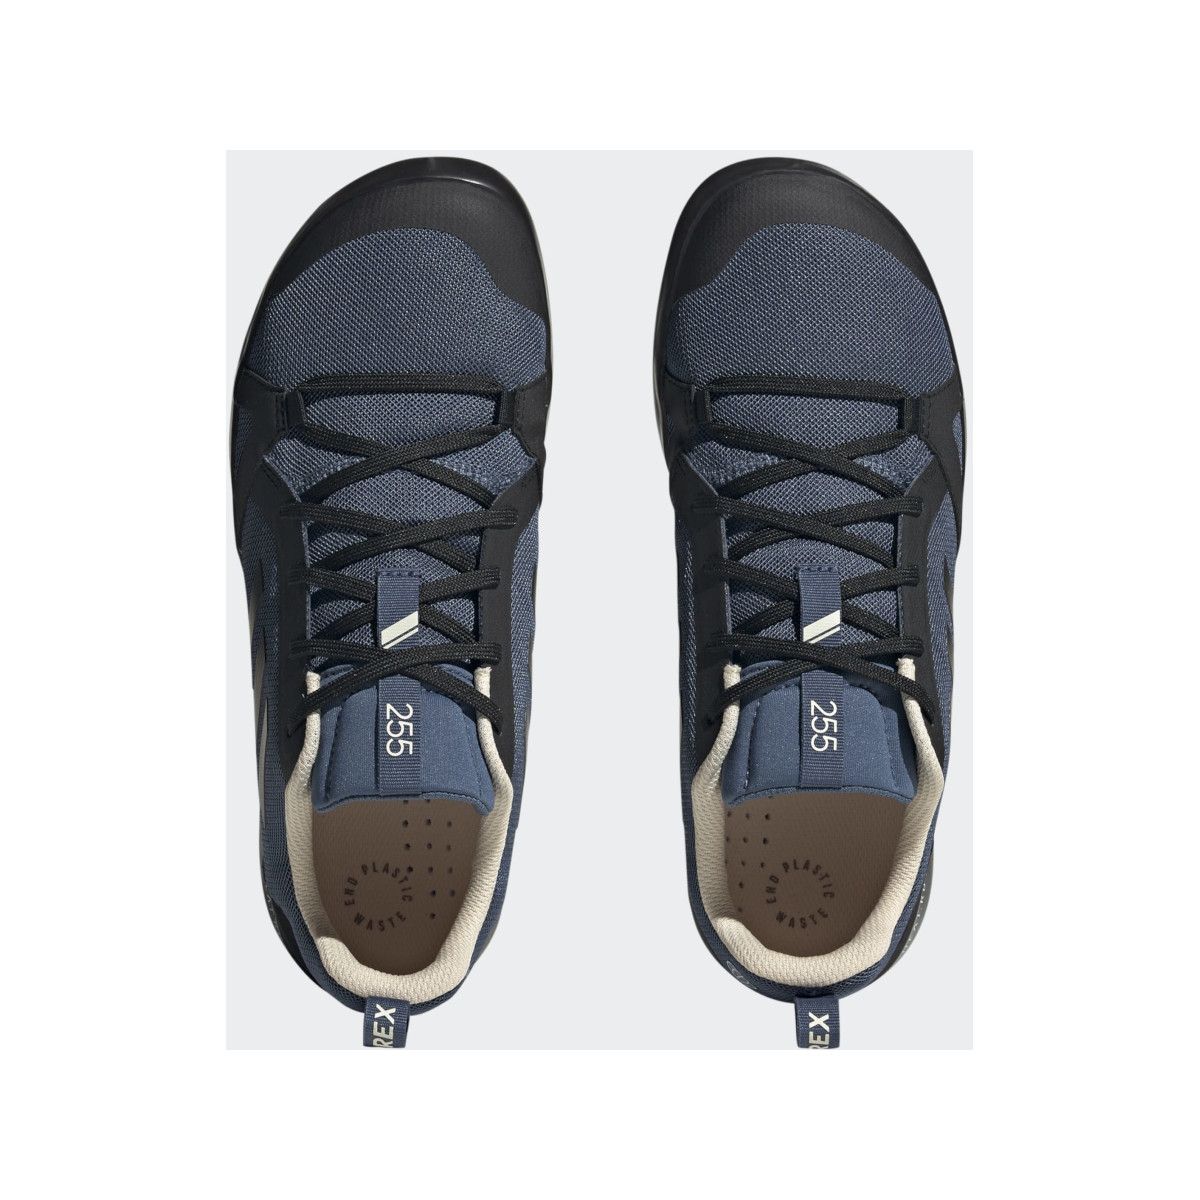 Adidas Boot Lace bootschoen heren zwart-blauw, maat 44 2/3